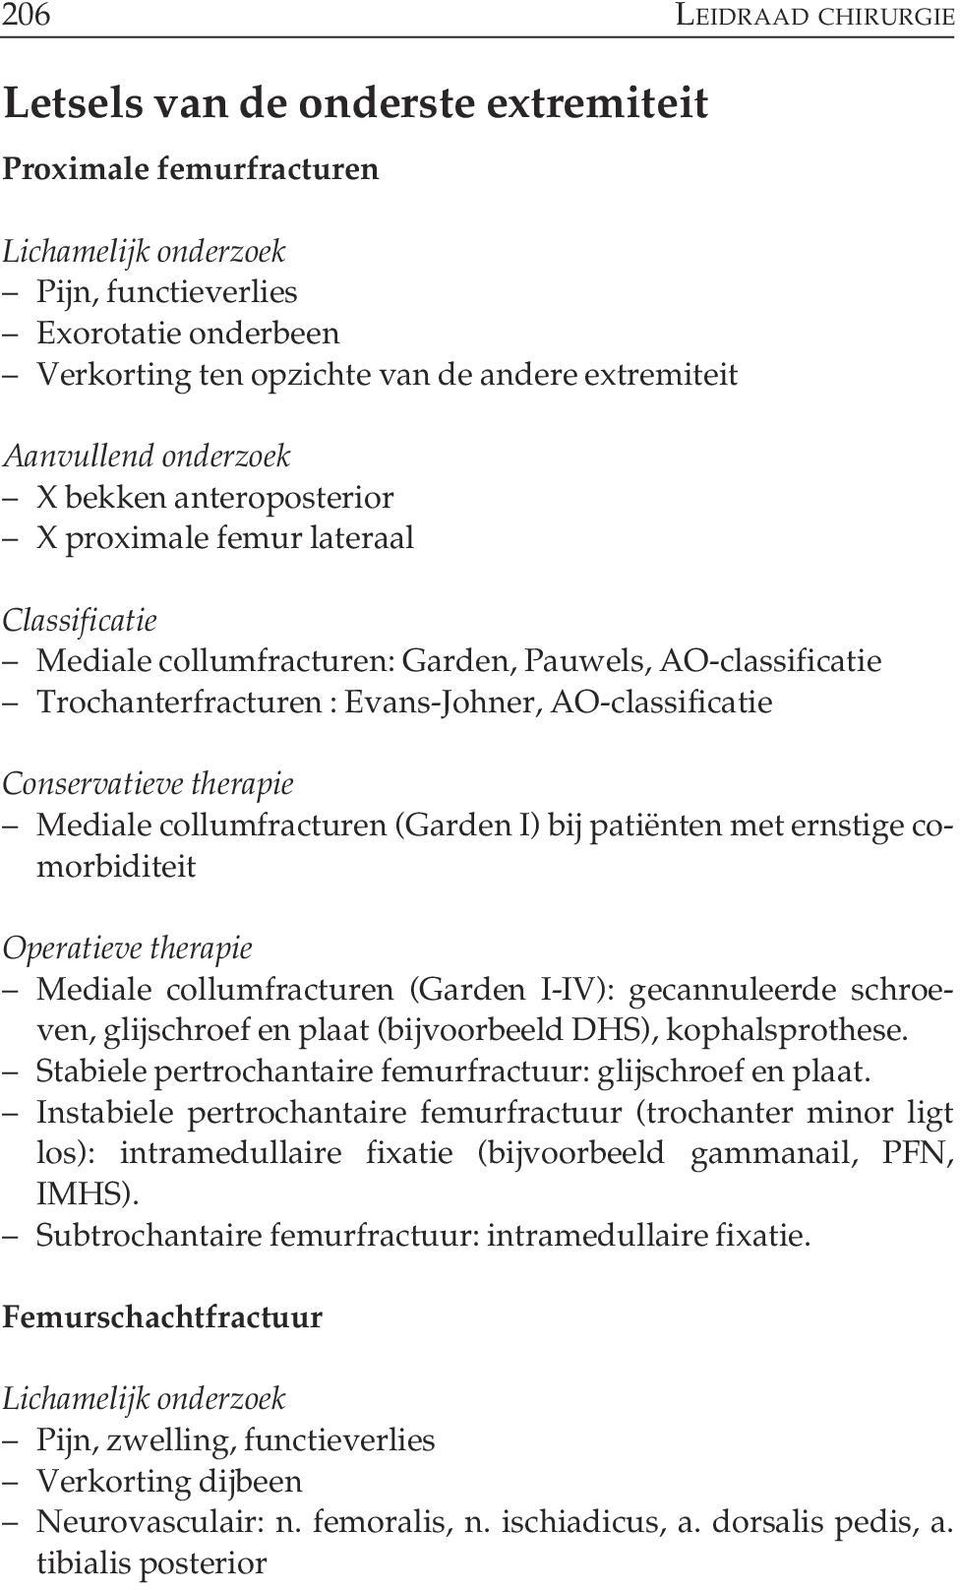 patiënten met ernstige comorbiditeit Mediale collumfracturen (Garden I-IV): gecannuleerde schroeven, glijschroef en plaat (bijvoorbeeld DHS), kophalsprothese.